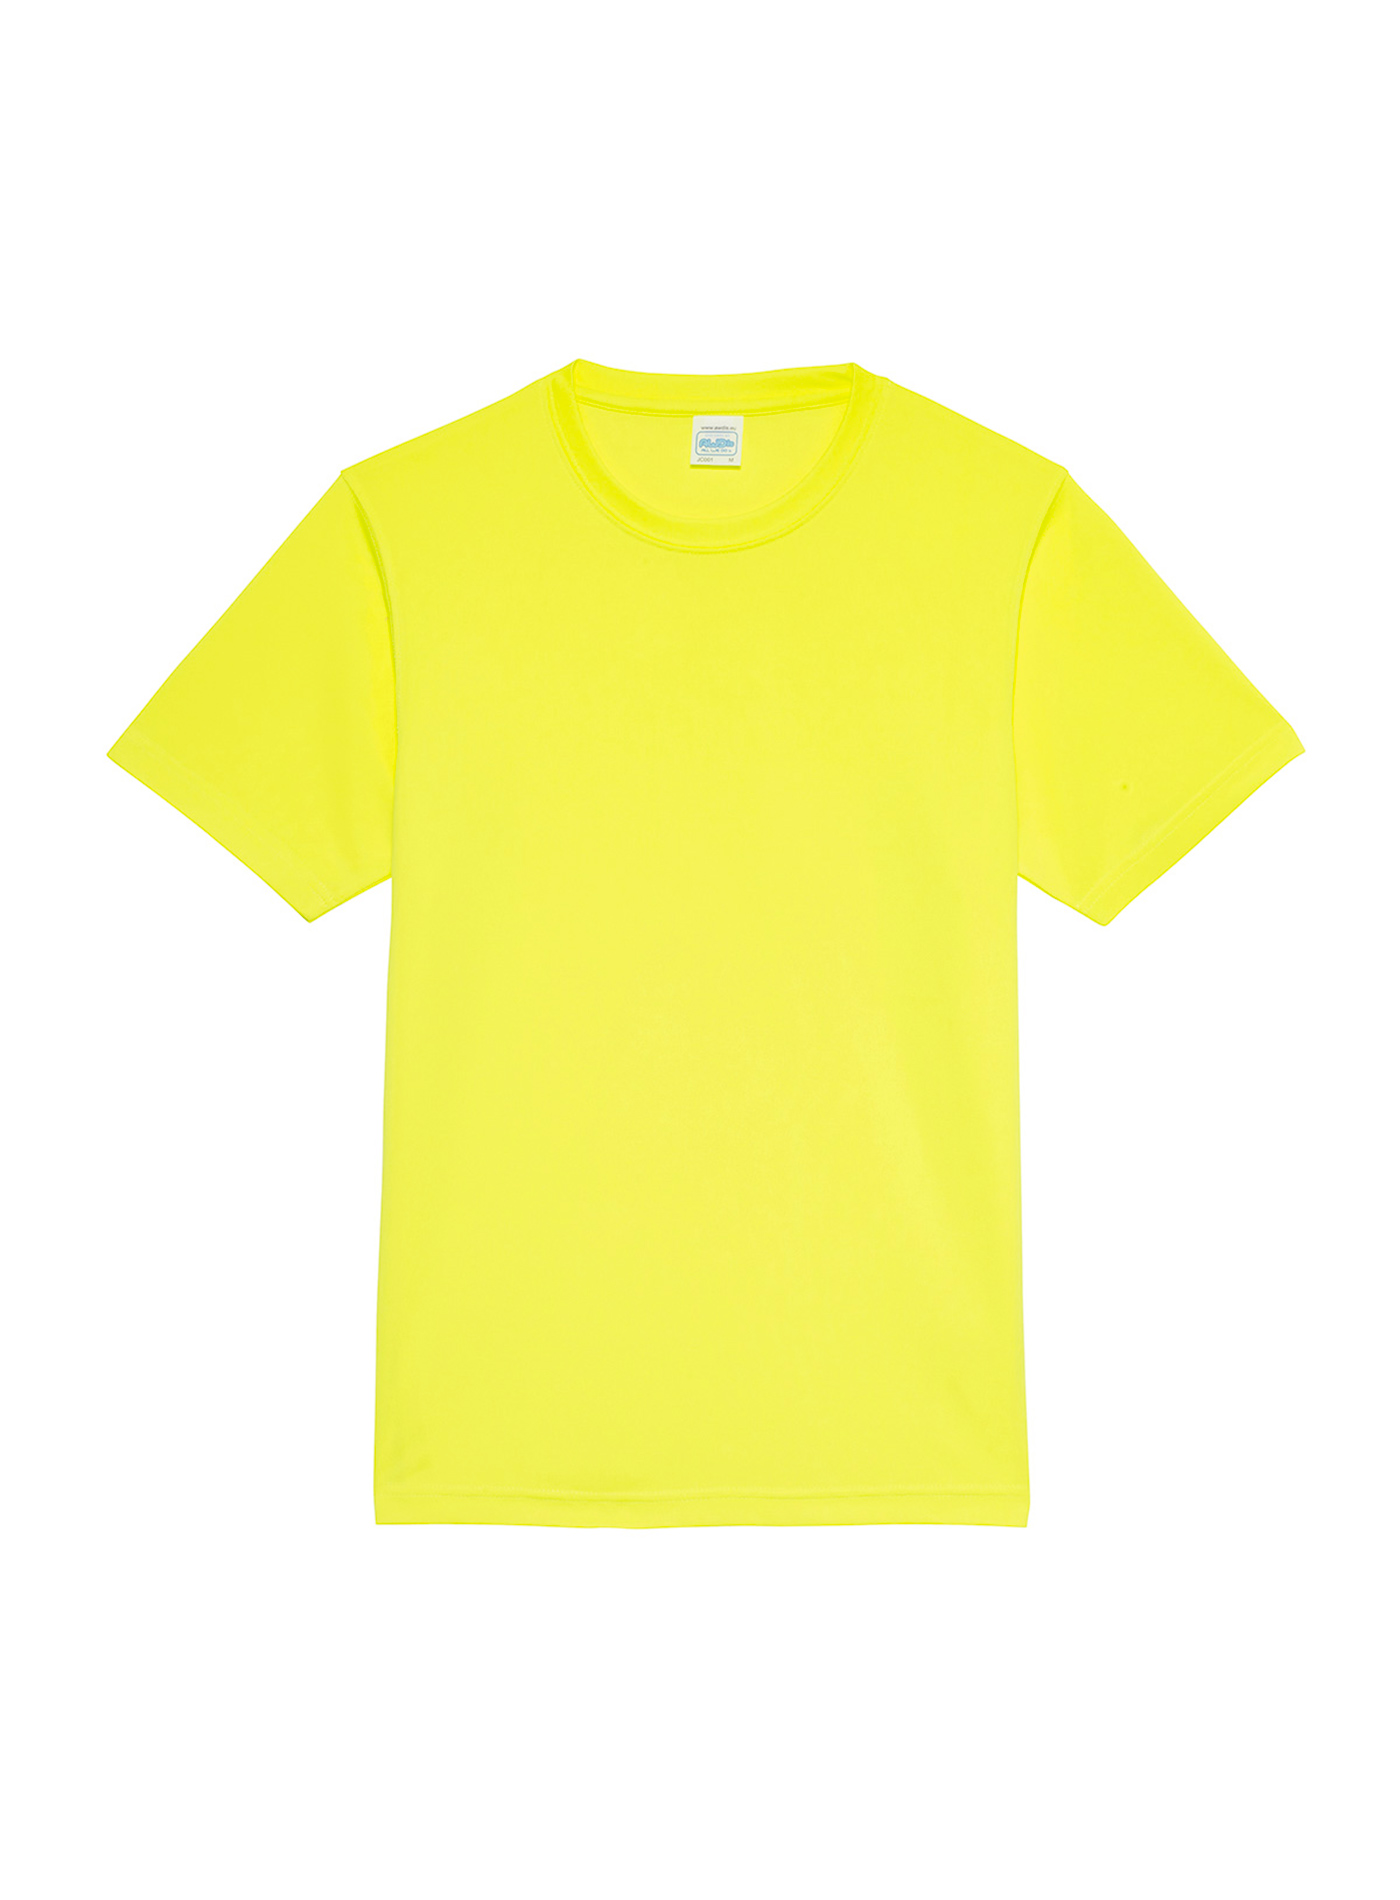 Unisex tričko Just Ts Neonlight - Neonově žlutá XL